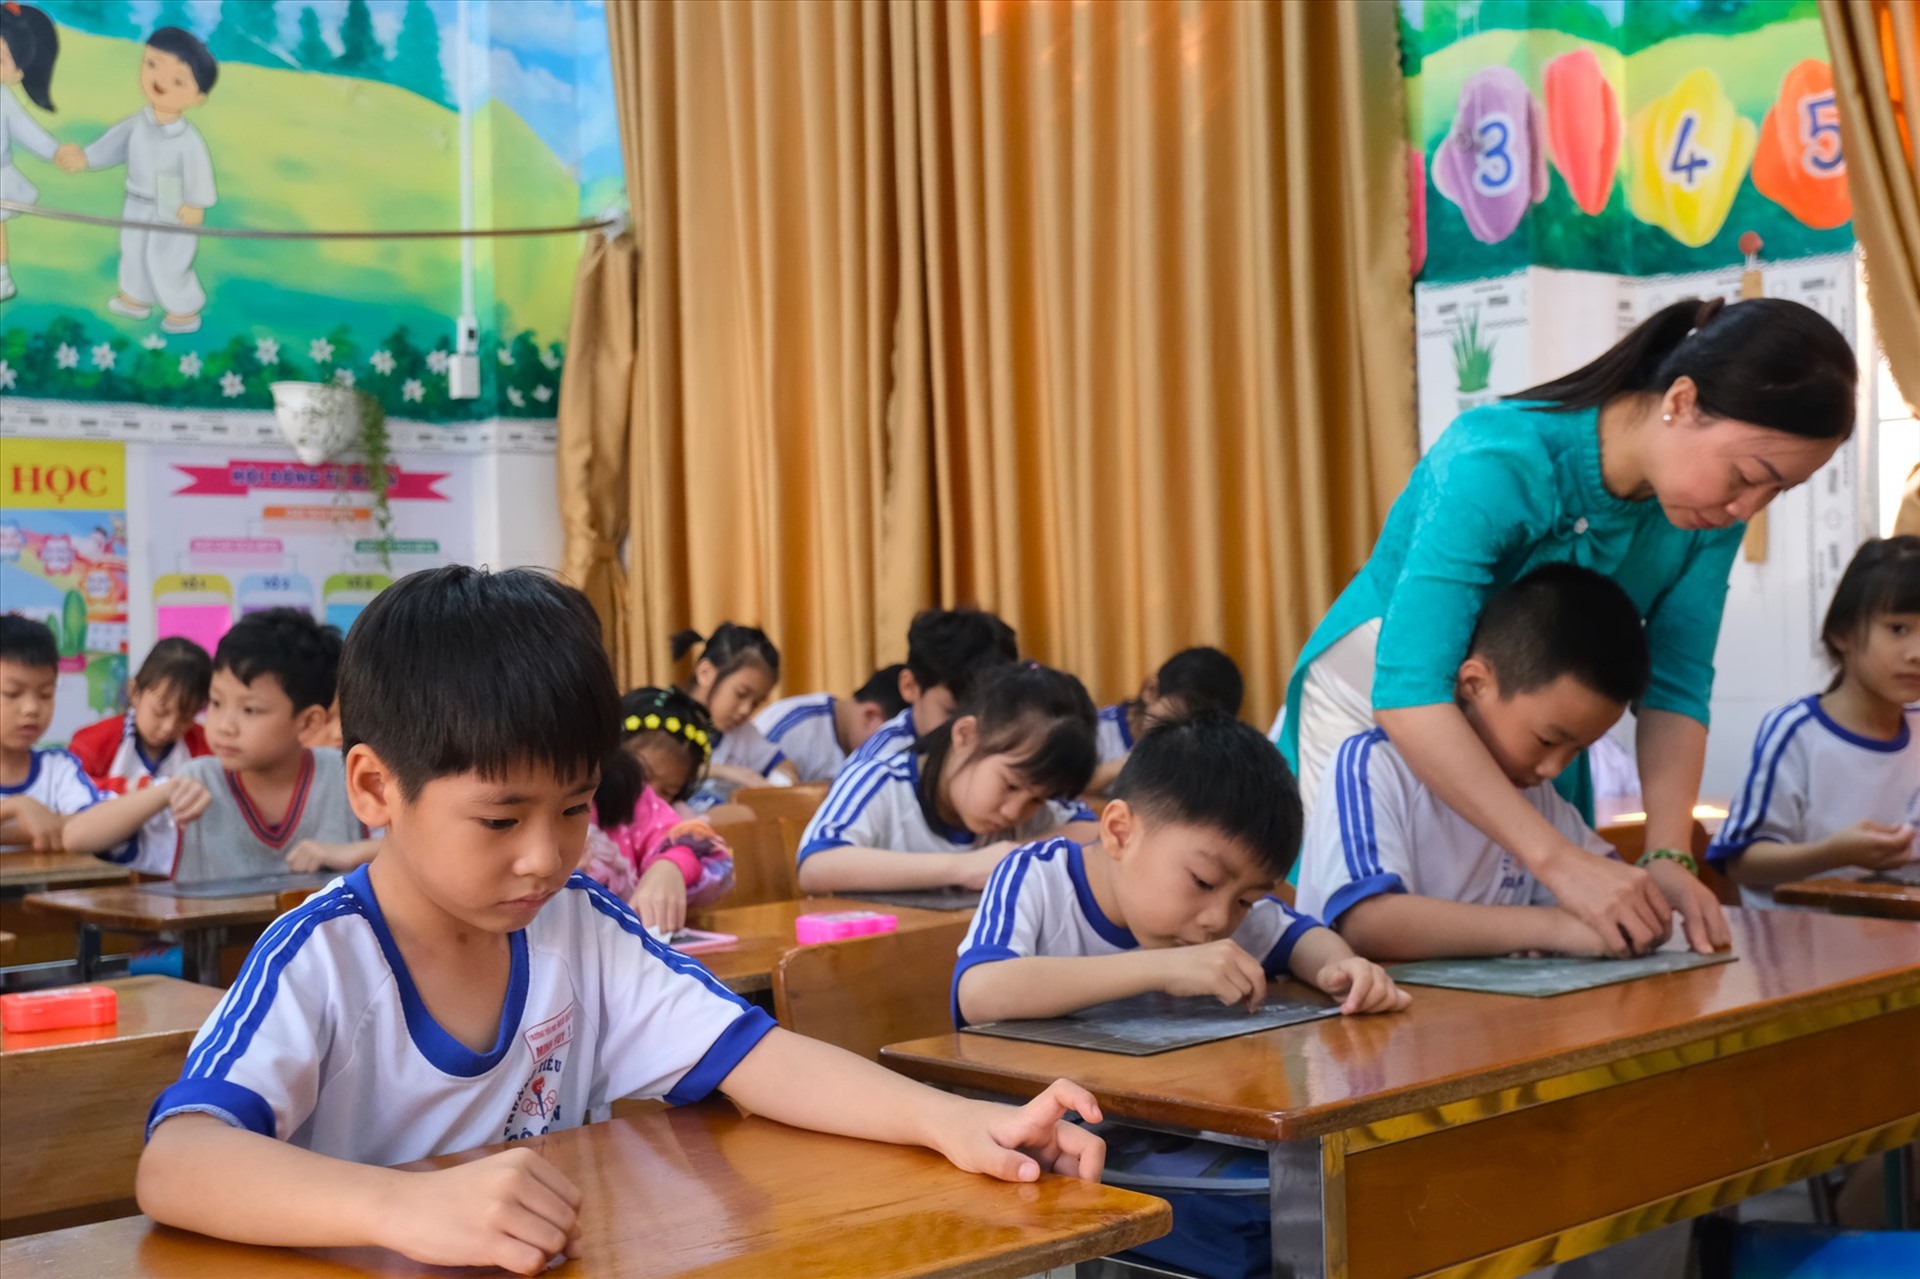 Ngành giáo dục các tỉnh, thành khu vực ĐBSCL đang tiếp tục tuyển dụng giáo viên. Ảnh: Phong Linh